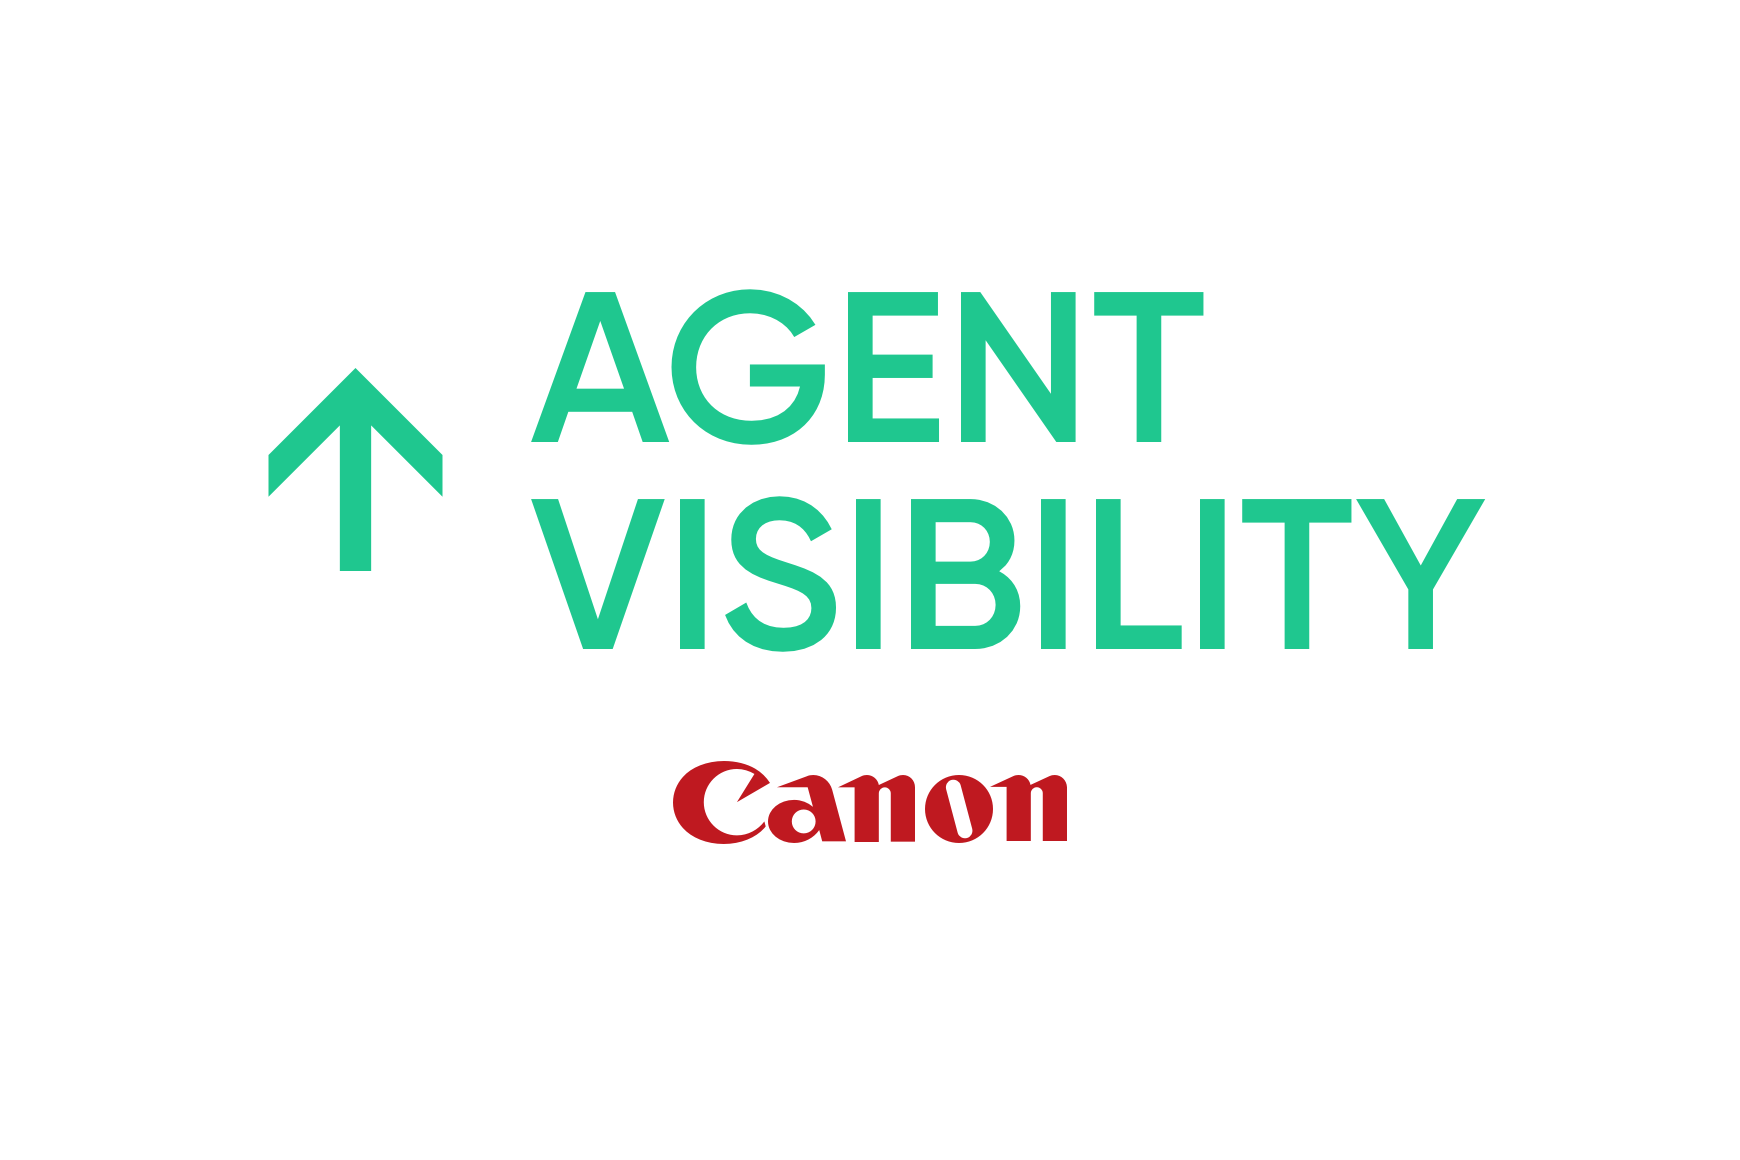 Canon: miglioramento della produttività e della visibilità degli agenti